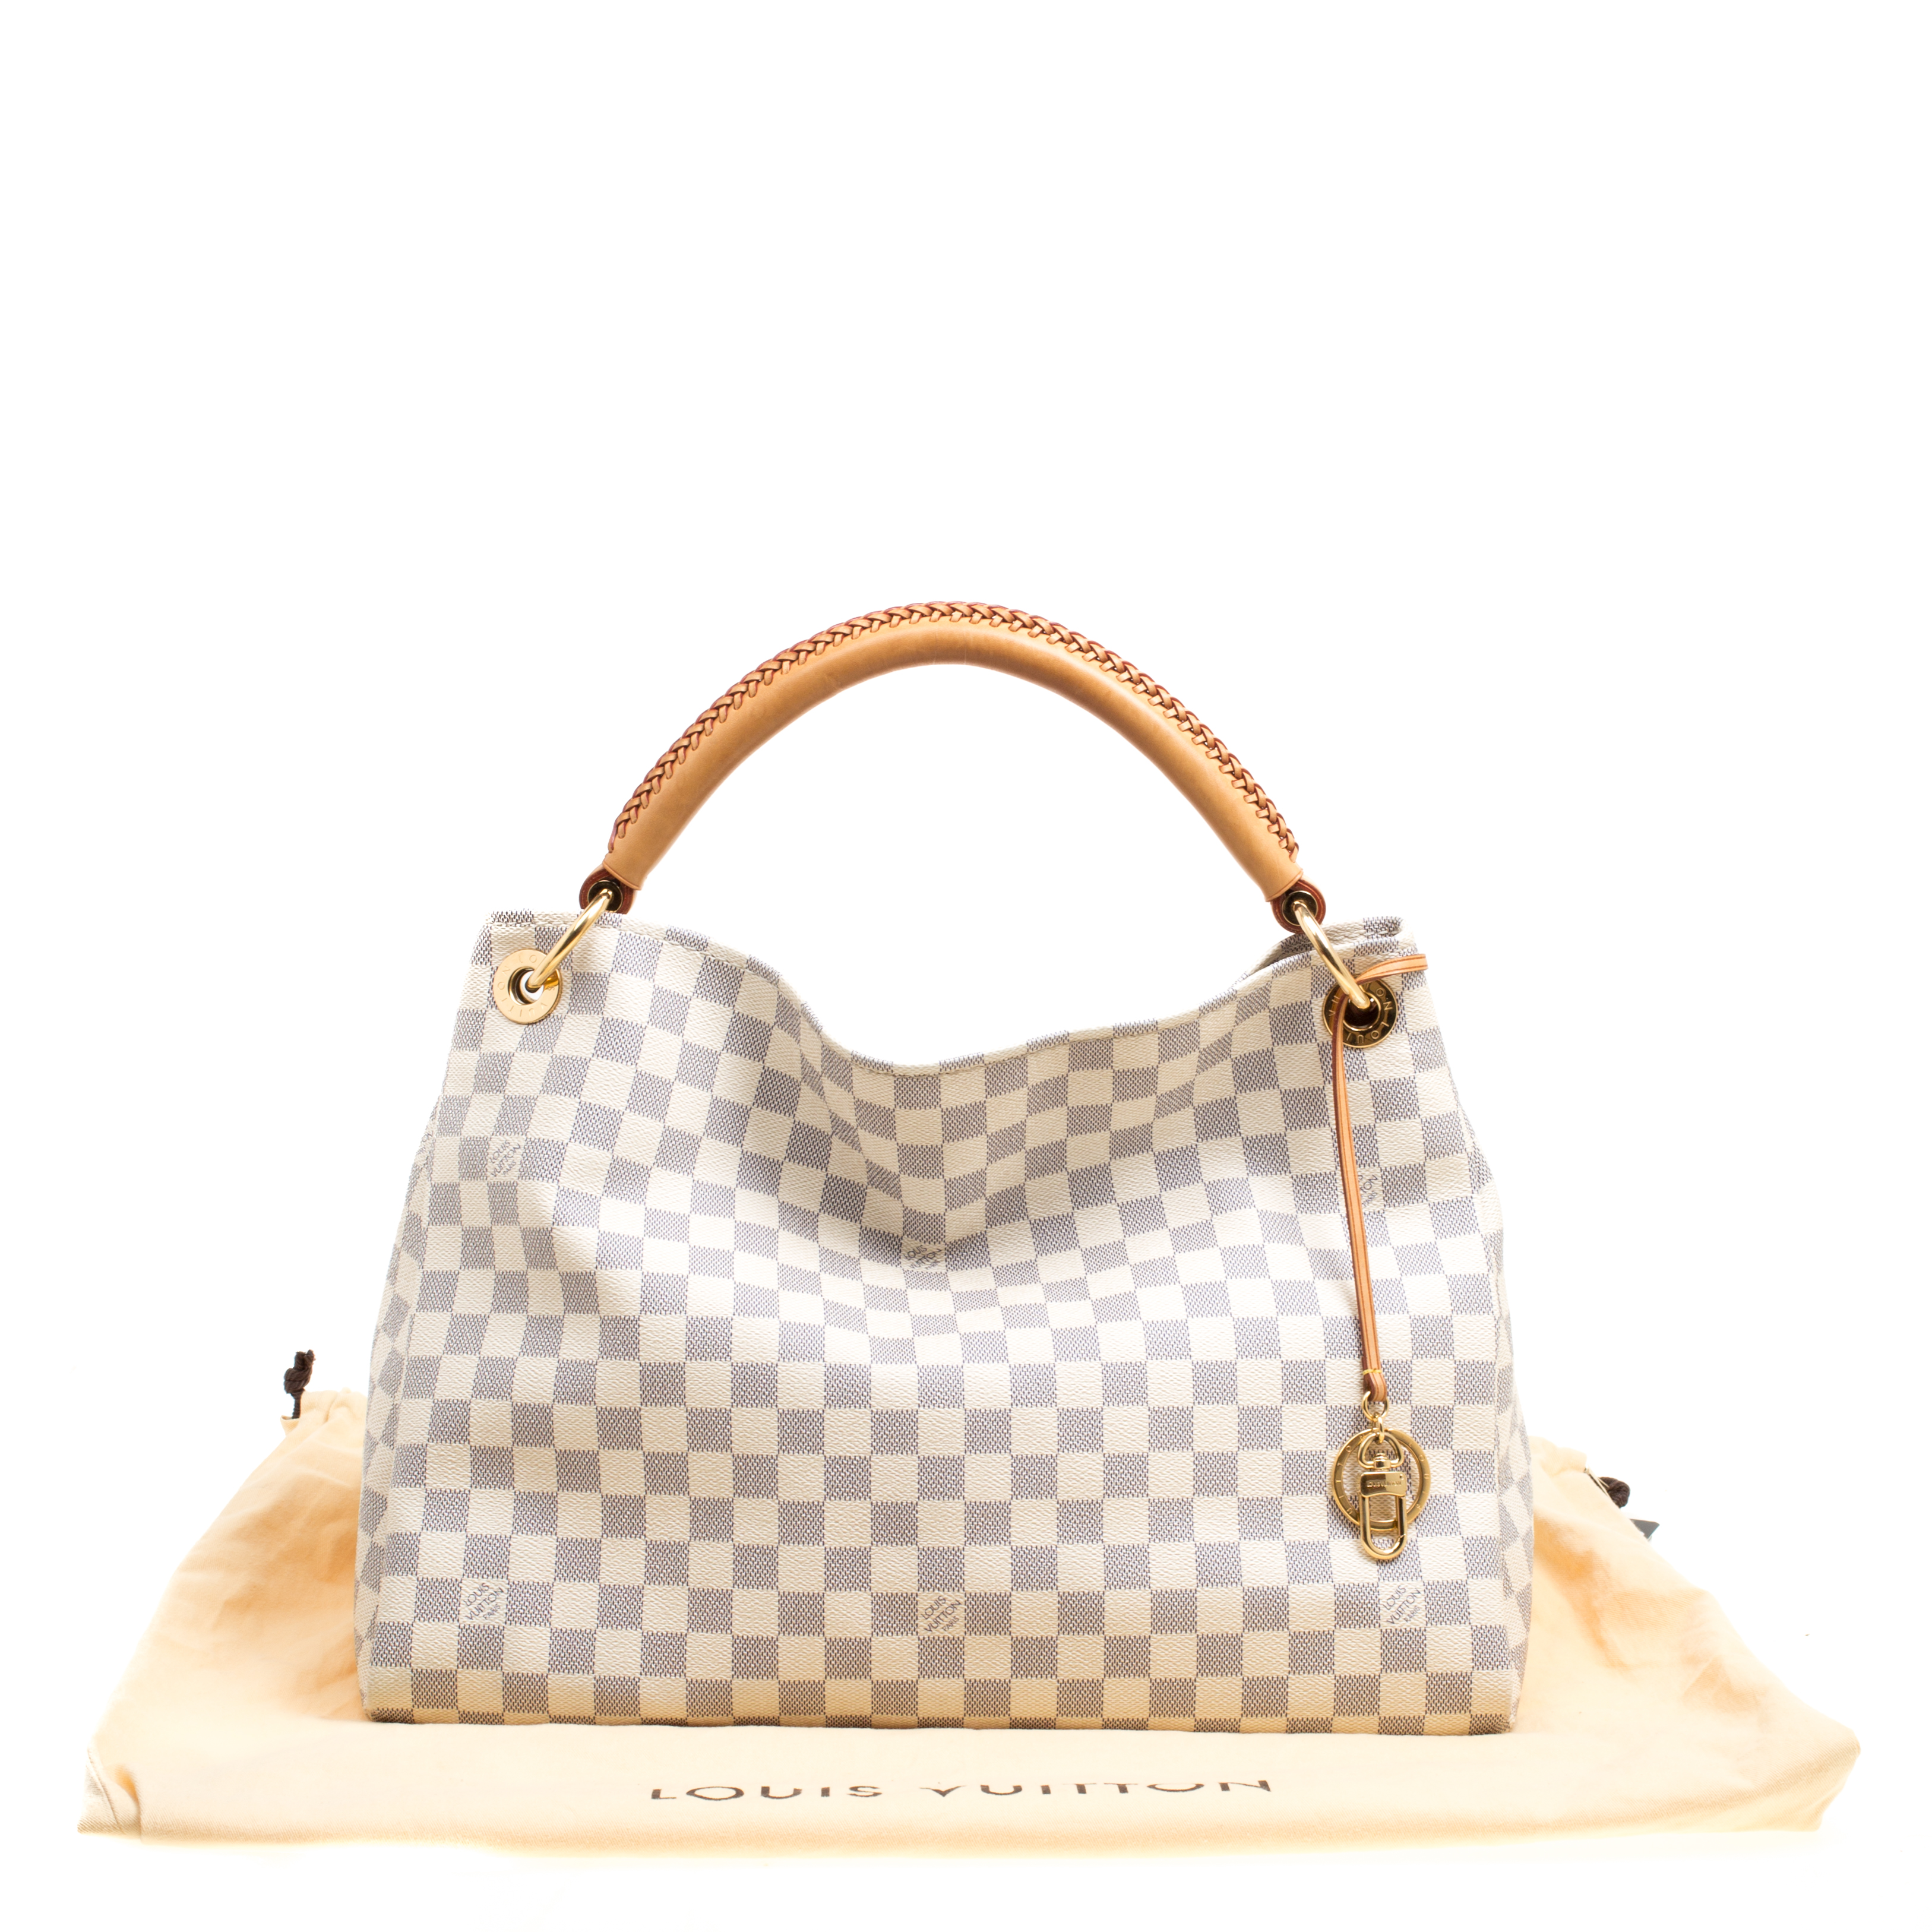 Louis Vuitton Damier Azur Canvas Artsy MM Bag - ShopperBoard